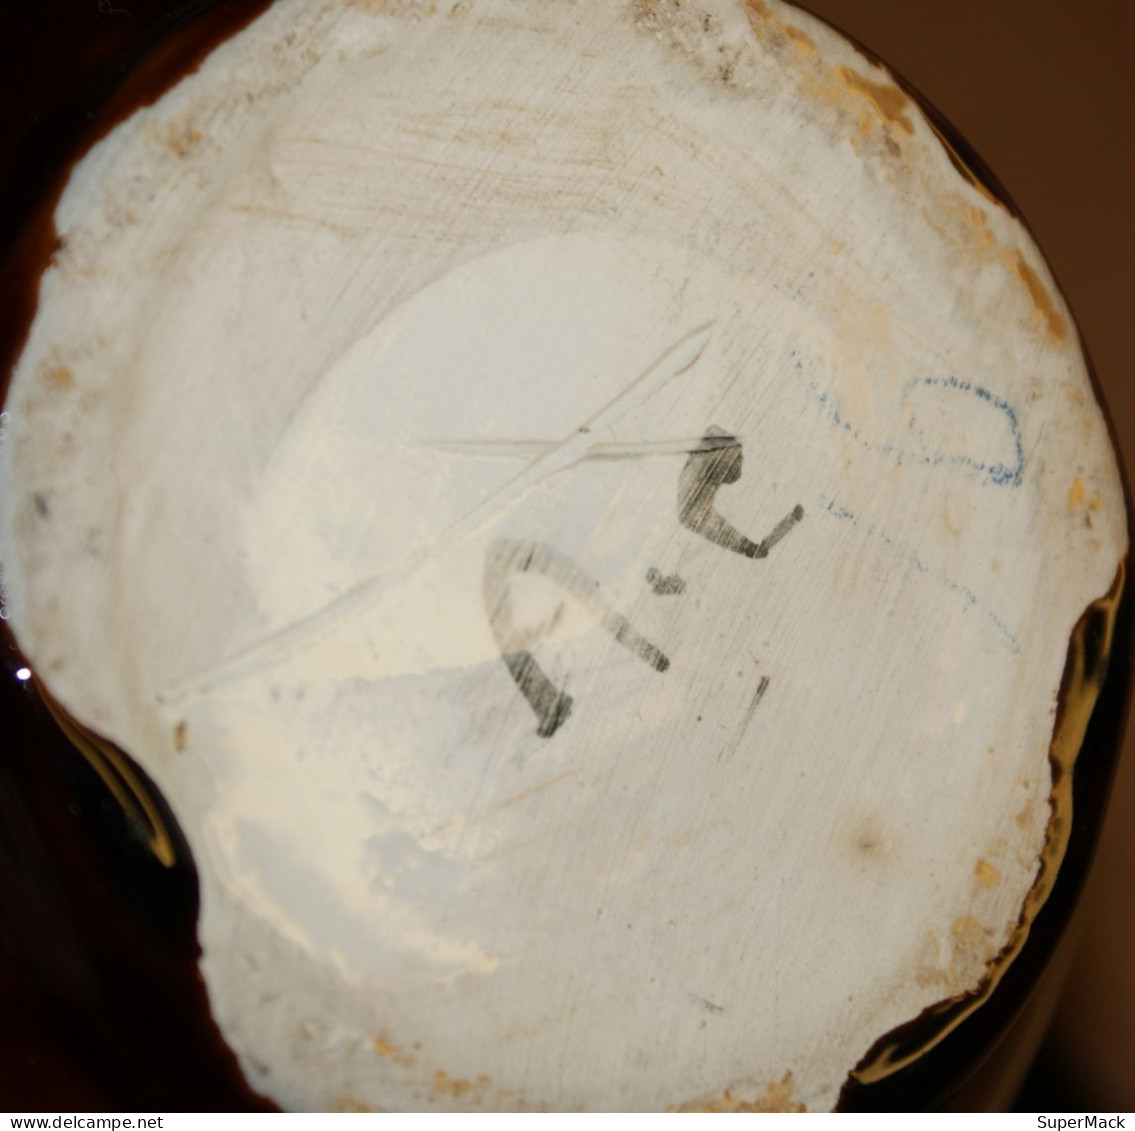 Ancienne cruche, pichet, broc en grès émaillé signée A.C.